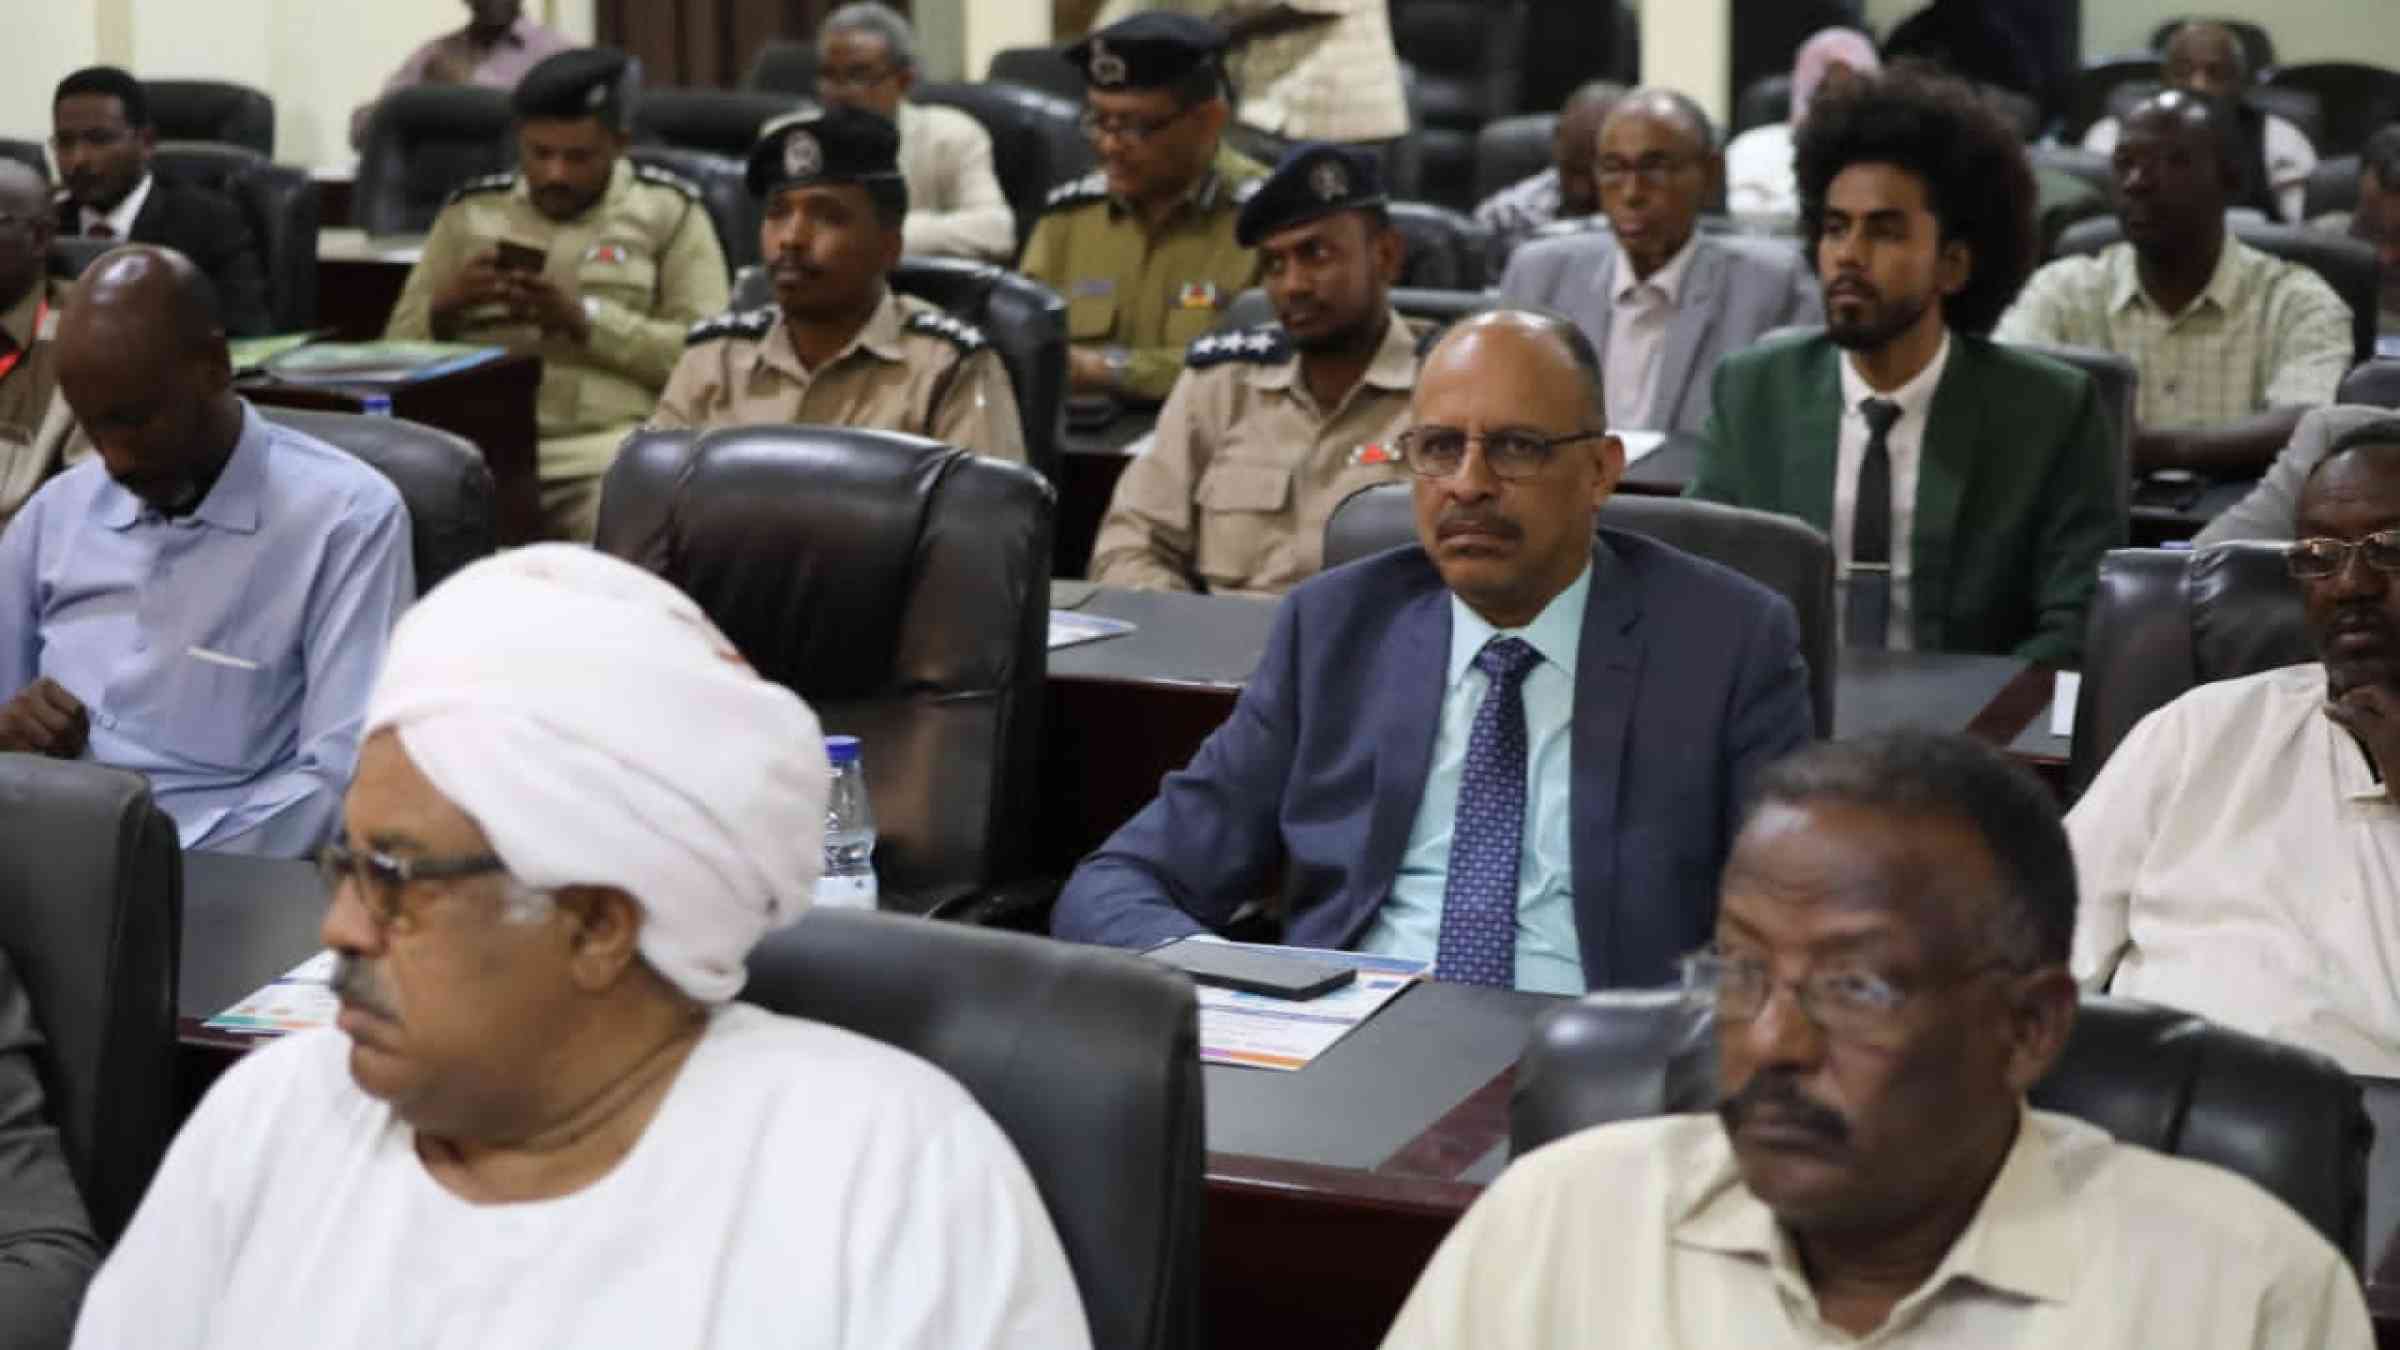 IDDRR 2022 Commemoration in Sudan